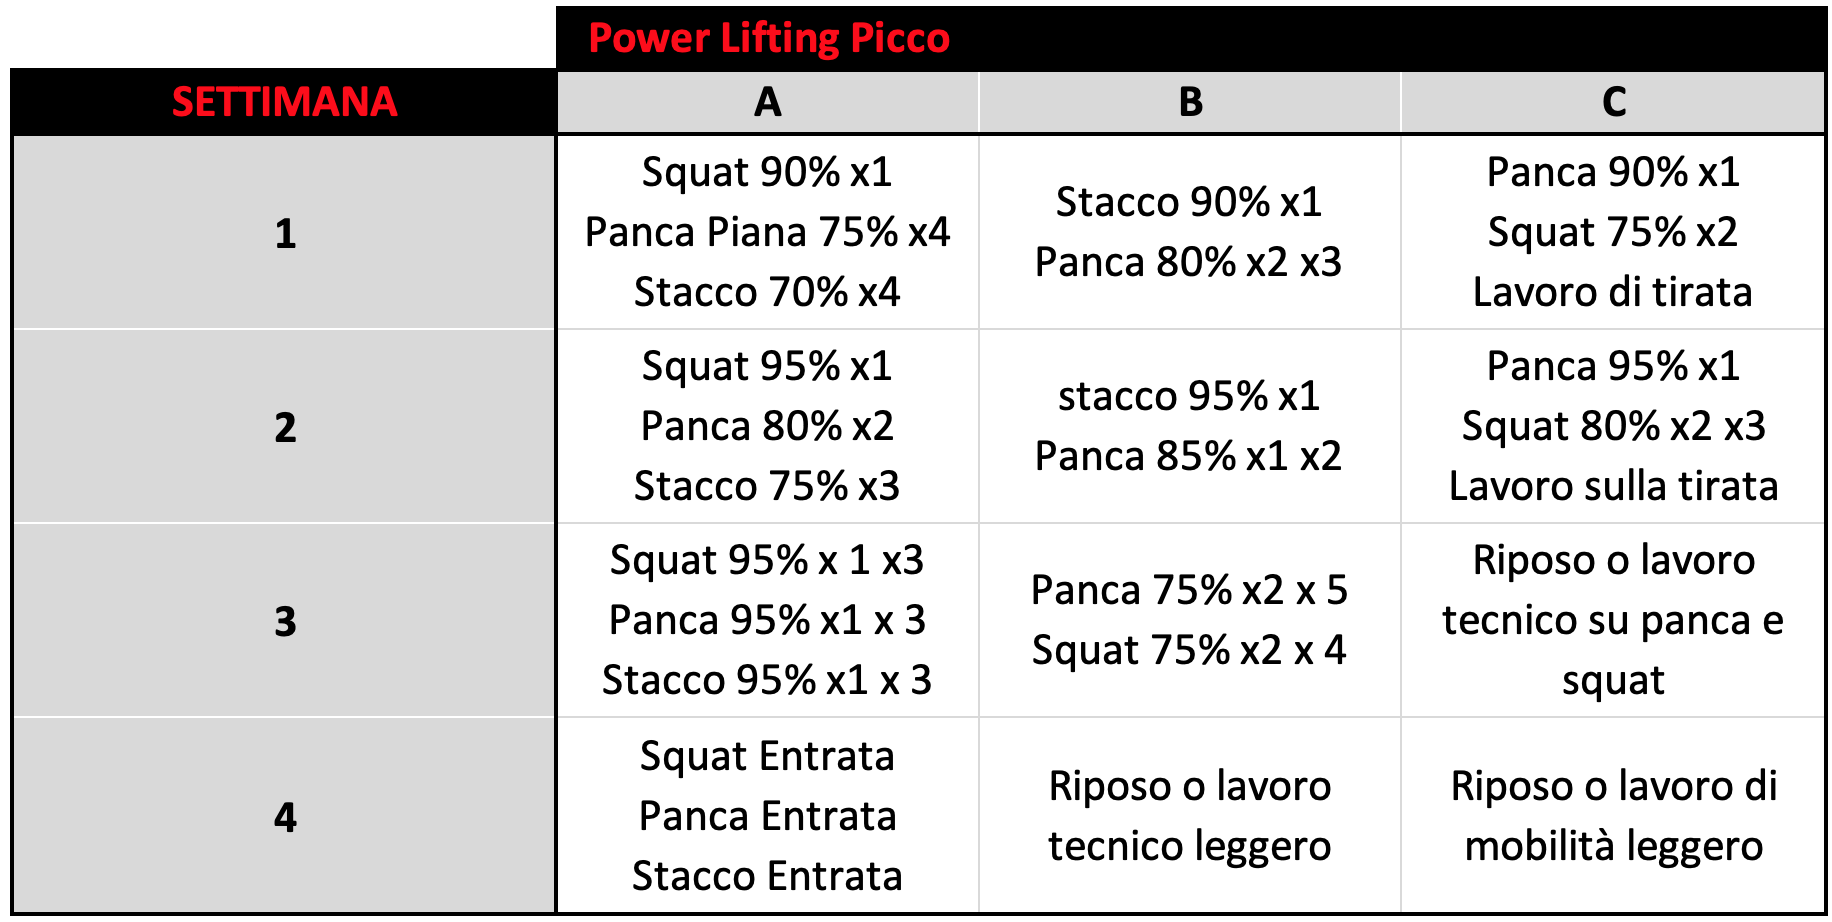 Power Lifting Picco